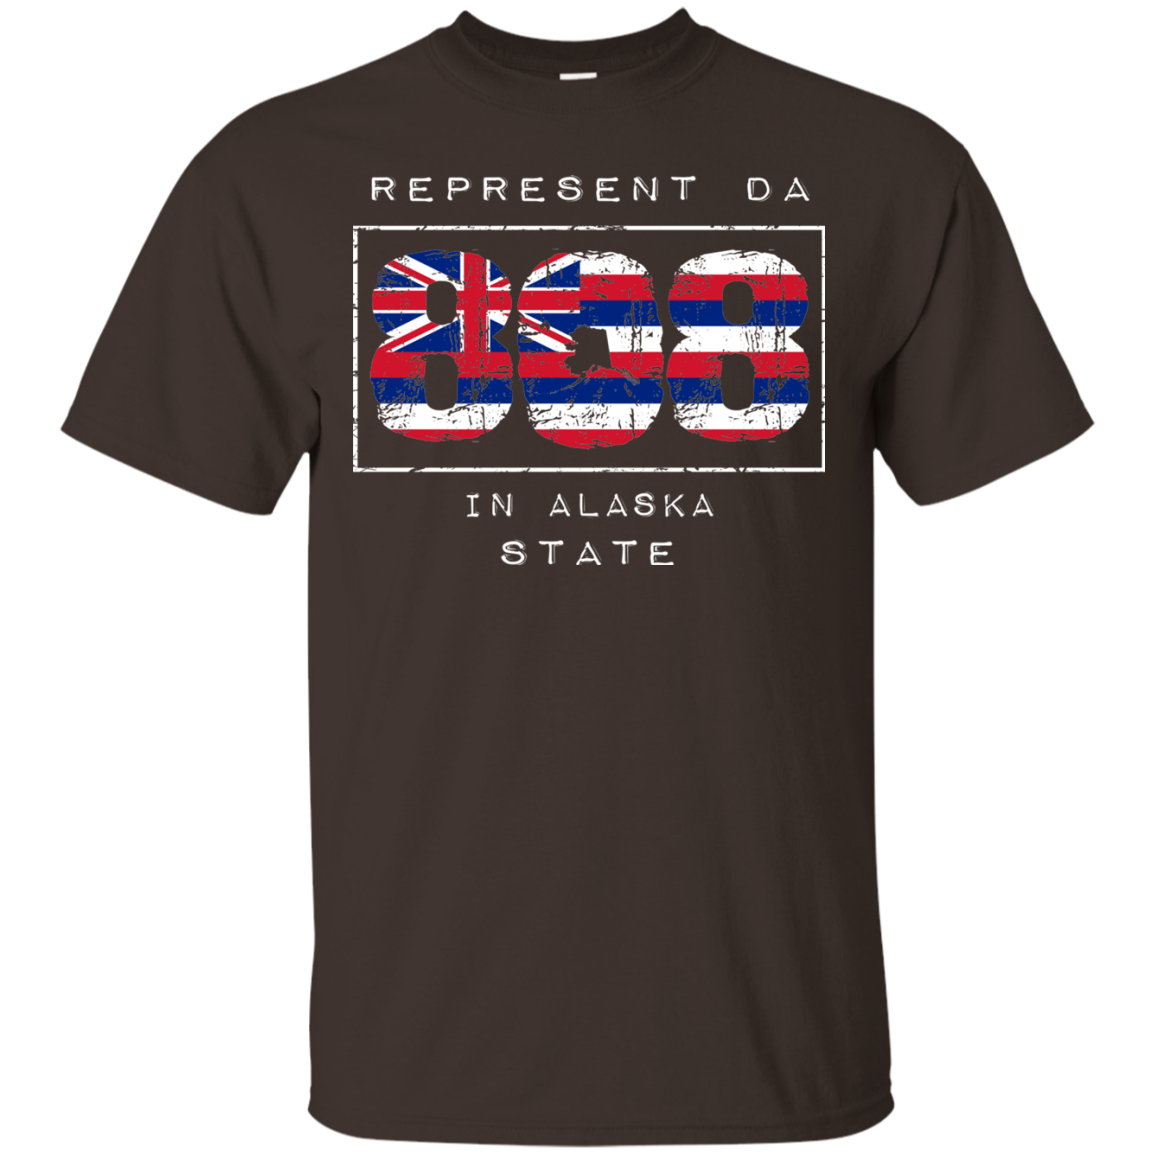 Rep Da 808 In Alaska State Ultra Cotton T-Shirt, T-Shirts, Hawaii Nei All Day